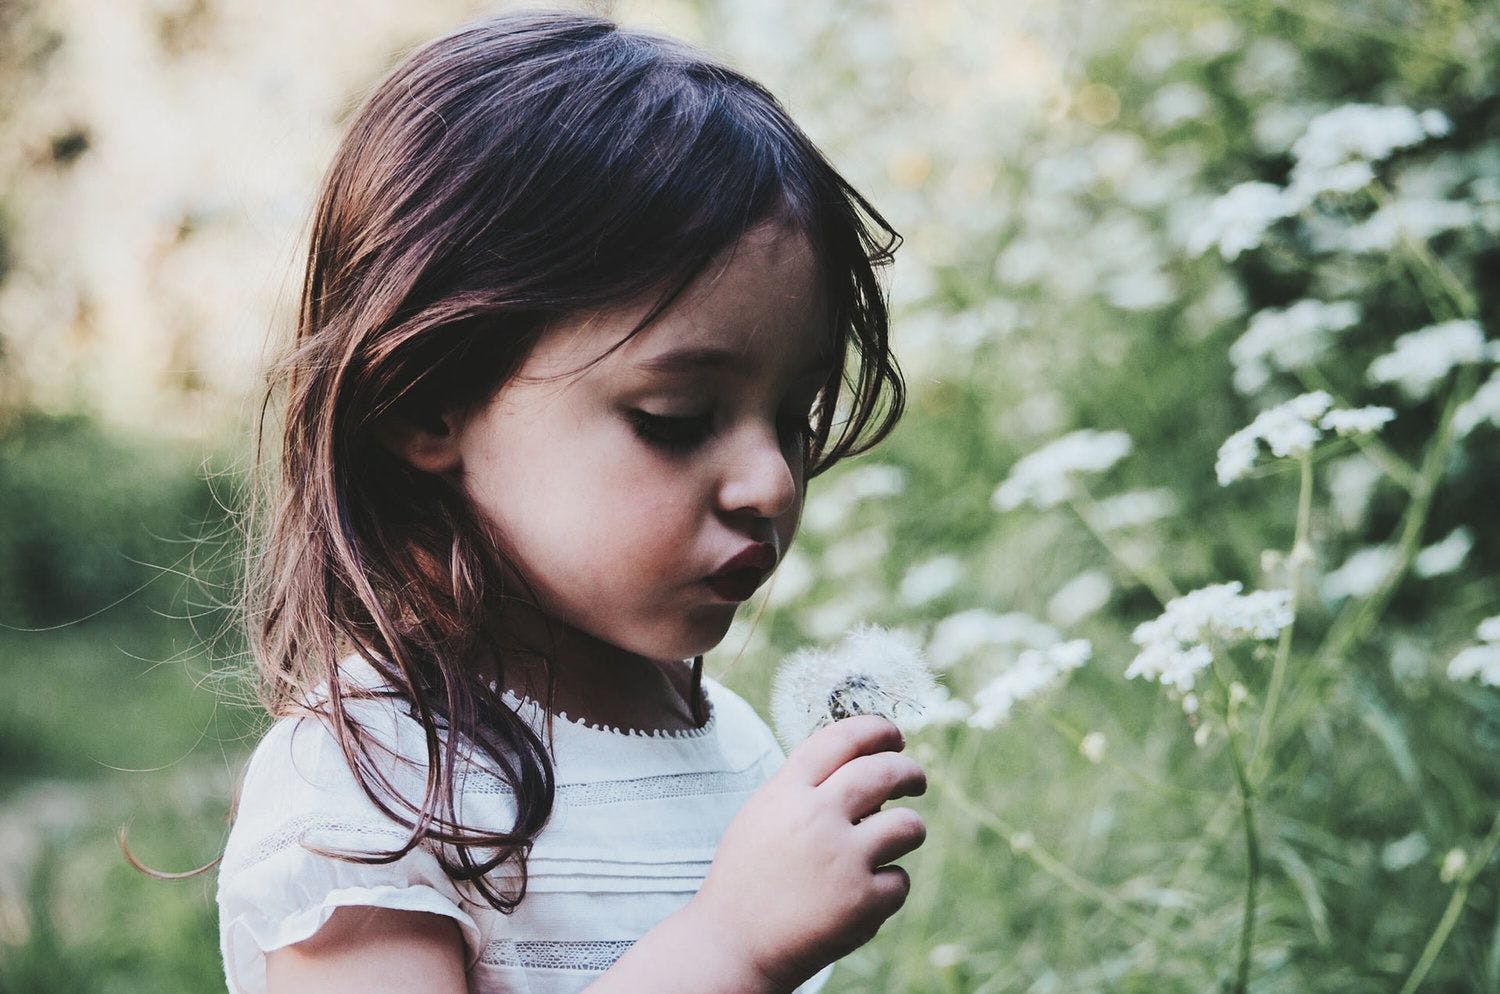 A little girl blowing on a dandelion.